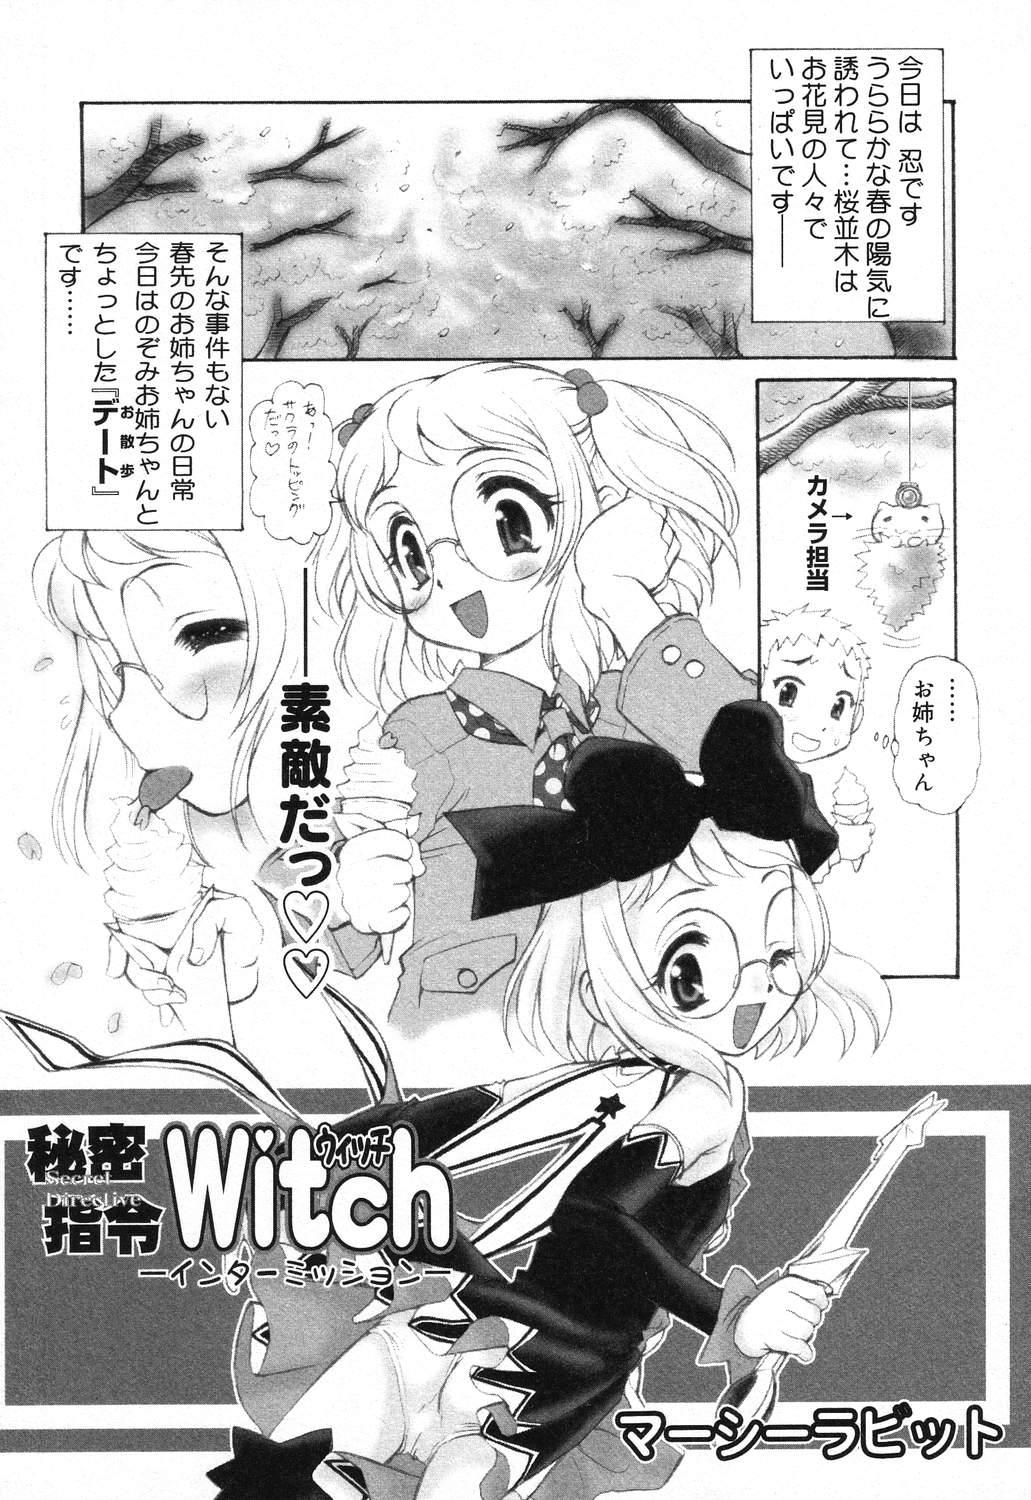 X Mitsu Shirei Witch 1-9 72